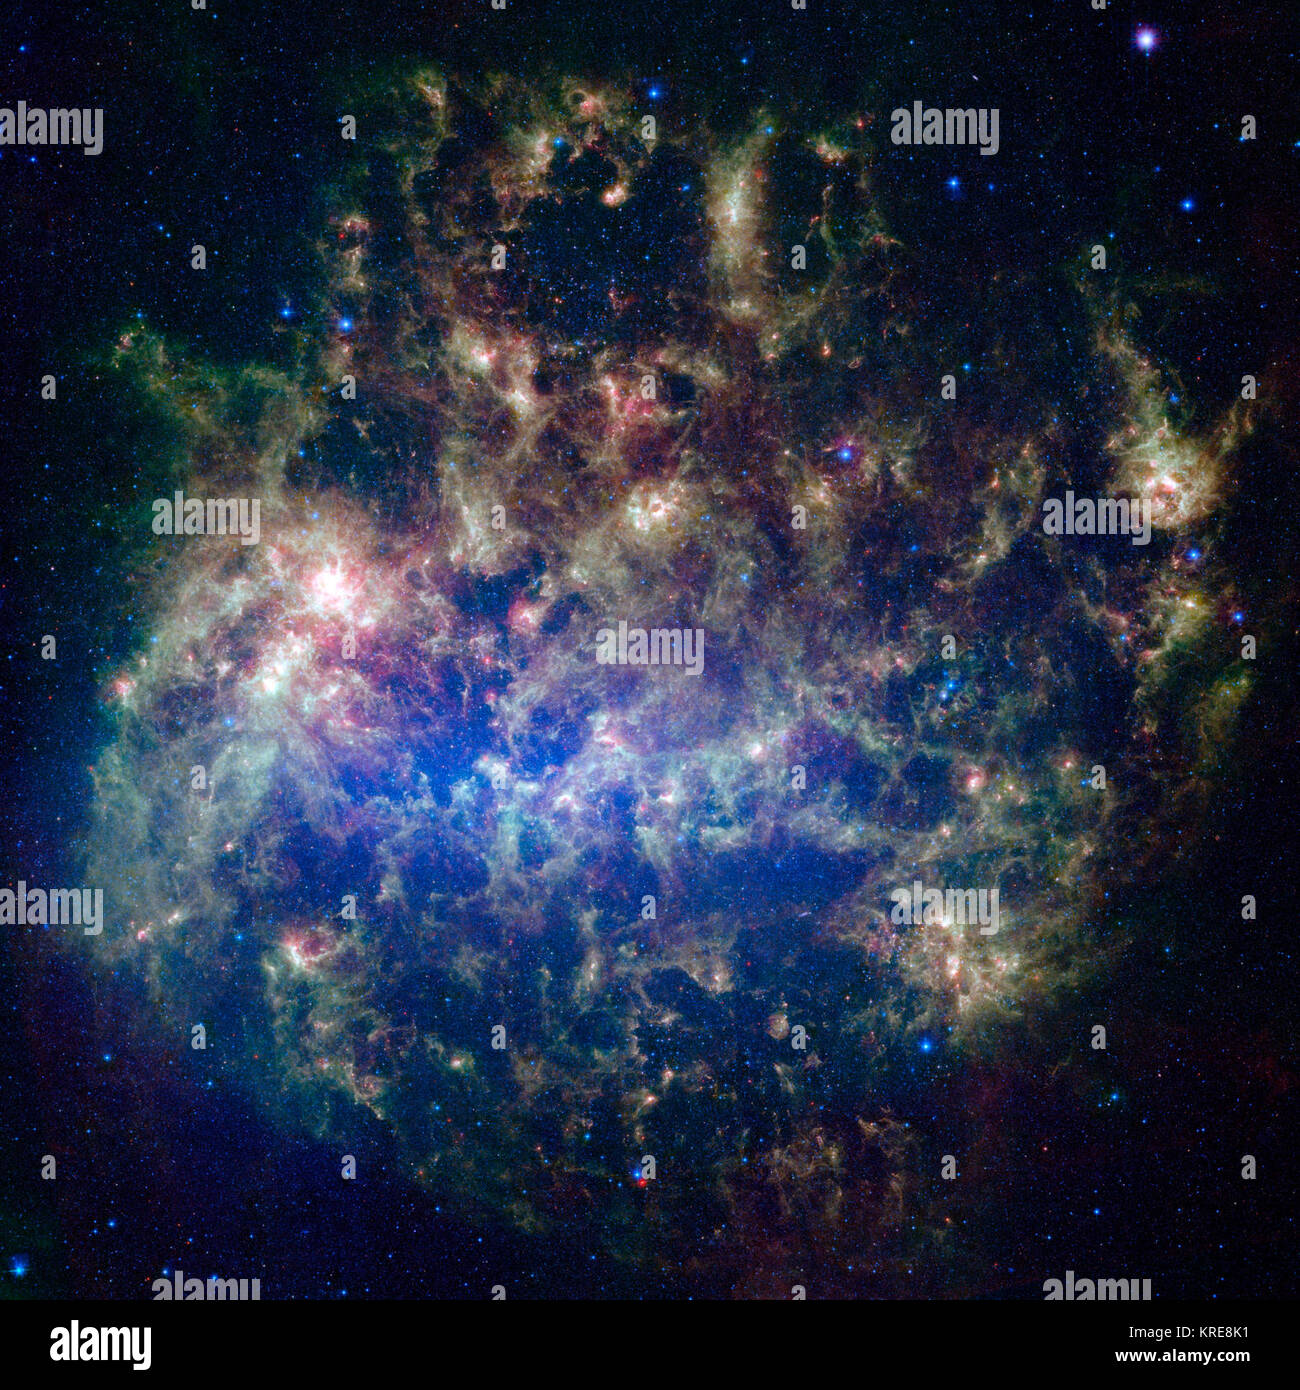 Cette image dynamique du télescope spatial Spitzer de la NASA présente le Grand Nuage de Magellan, une galaxie satellite de notre Voie Lactée. L'image infrarouge, une mosaïque de 300 000 chacune des tuiles, les astronomes offre une chance unique d'étudier le cycle de vie des étoiles et des poussières dans une seule galaxie. Près d'un million d'objets sont pour la première fois révélé dans cette vue Spitzer, qui représente environ un millier de fois de la sensibilité par rapport aux précédentes missions spatiales. La plupart des nouveaux objets sont poussiéreux stars d'âges divers peuplant le Grand Nuage de Magellan ; le reste est pensé pour être zone Banque D'Images